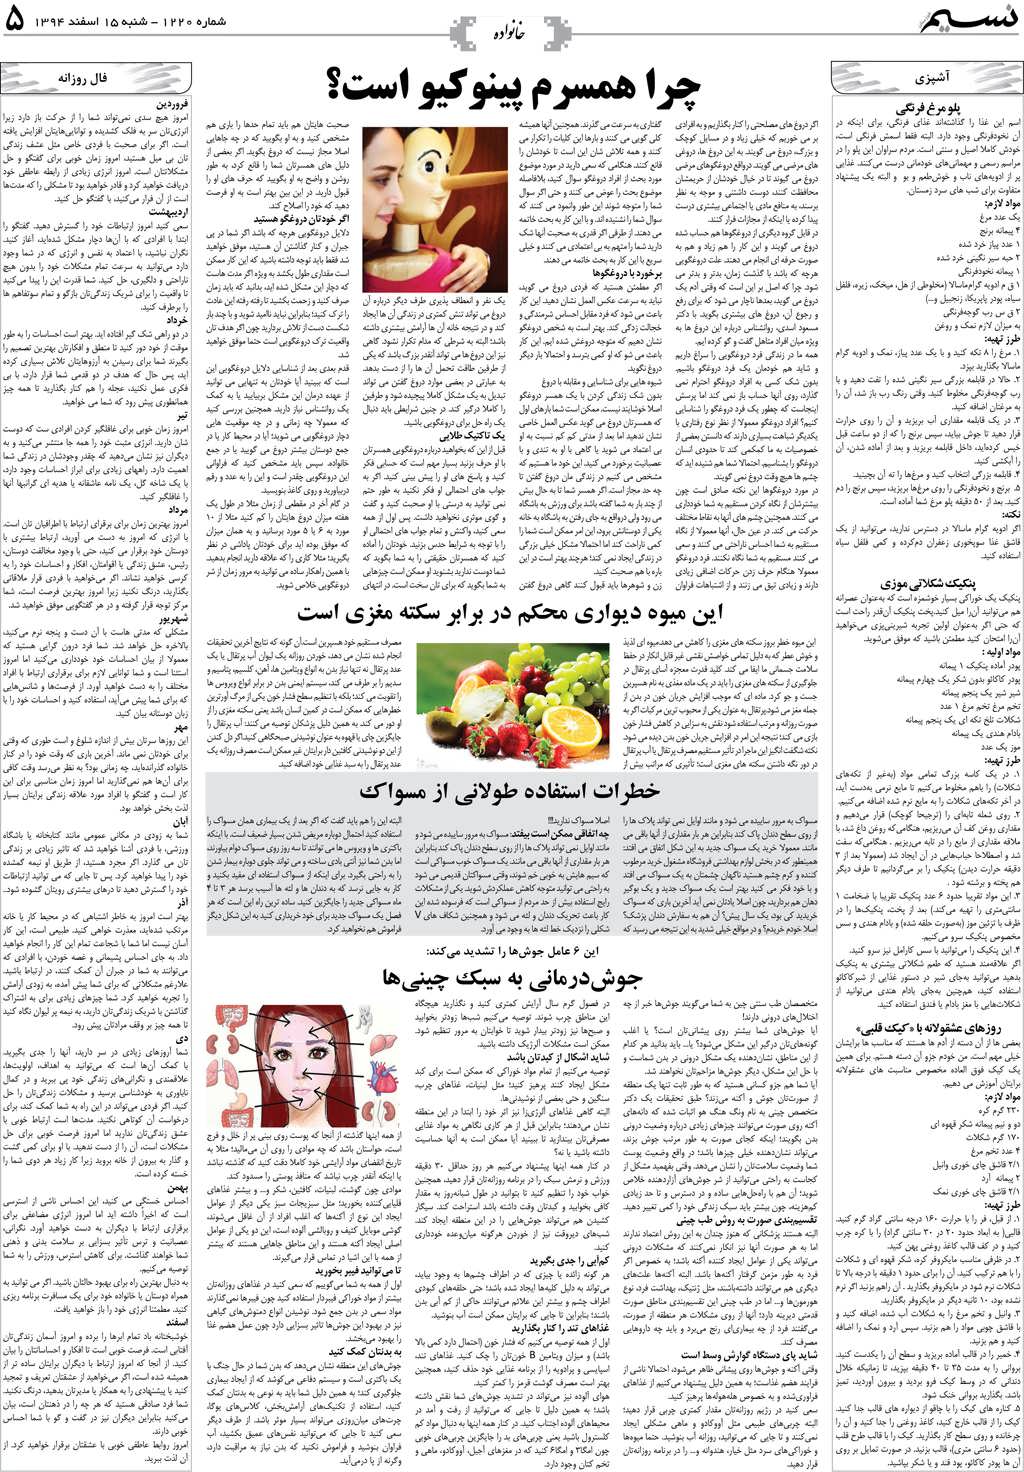 صفحه خانواده روزنامه نسیم شماره 1220